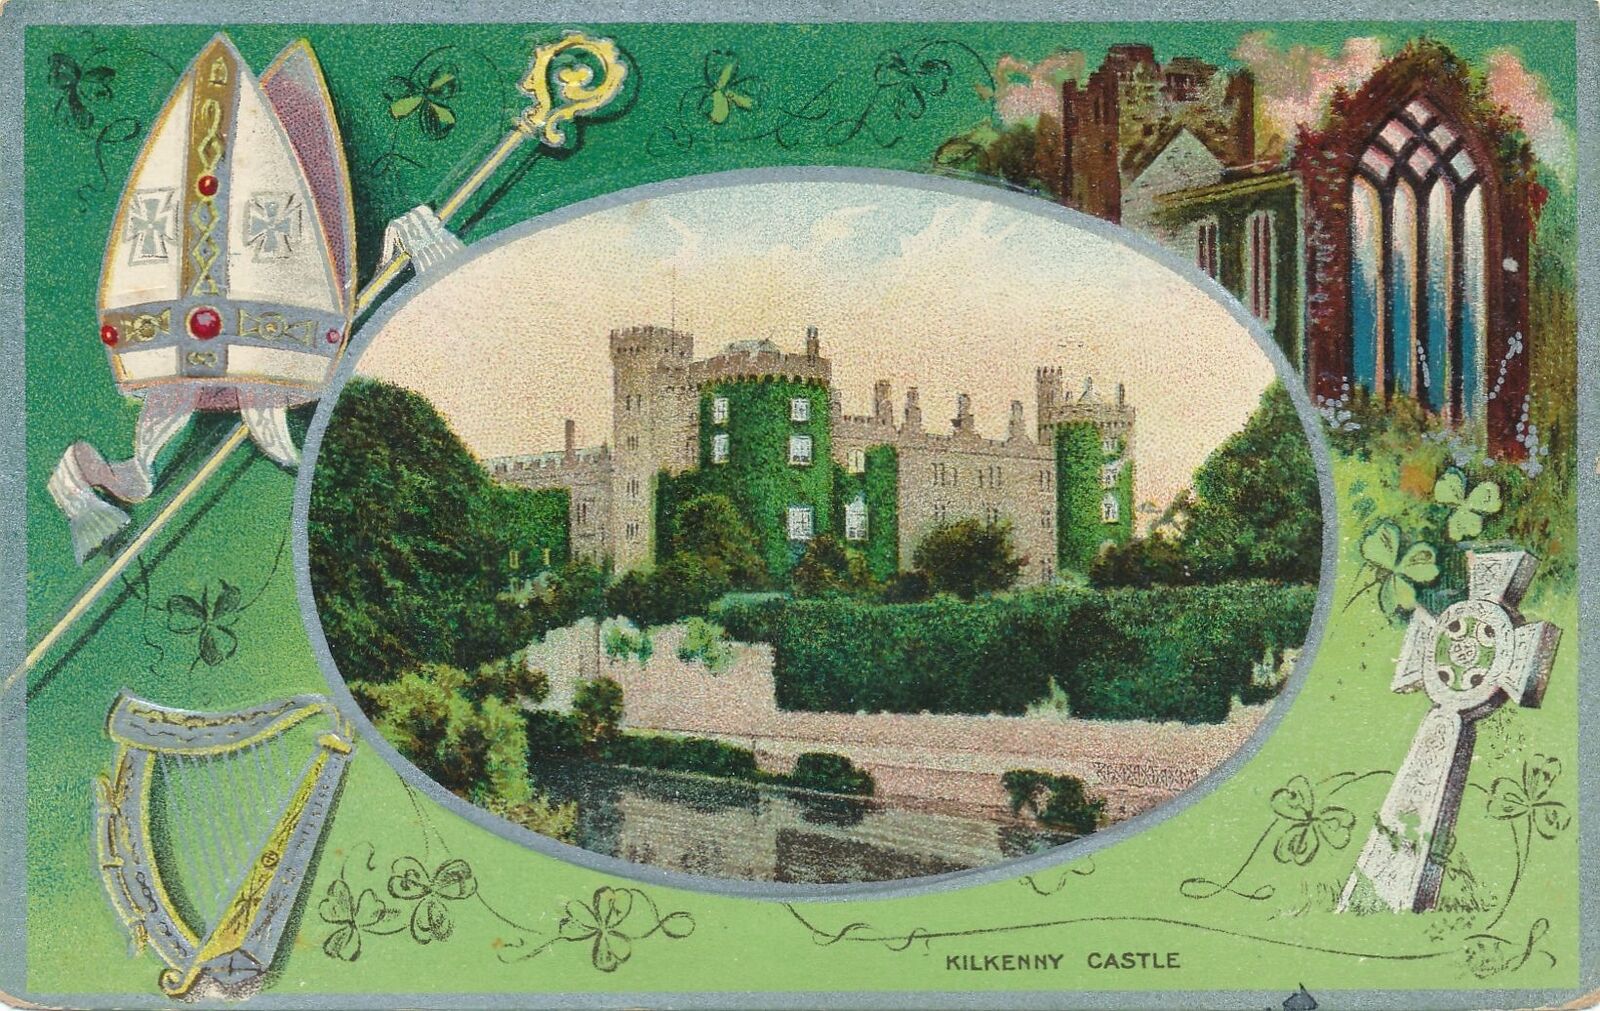 ST. PATRICK'S DAY - Kilkenny Castle Postcard - 1910